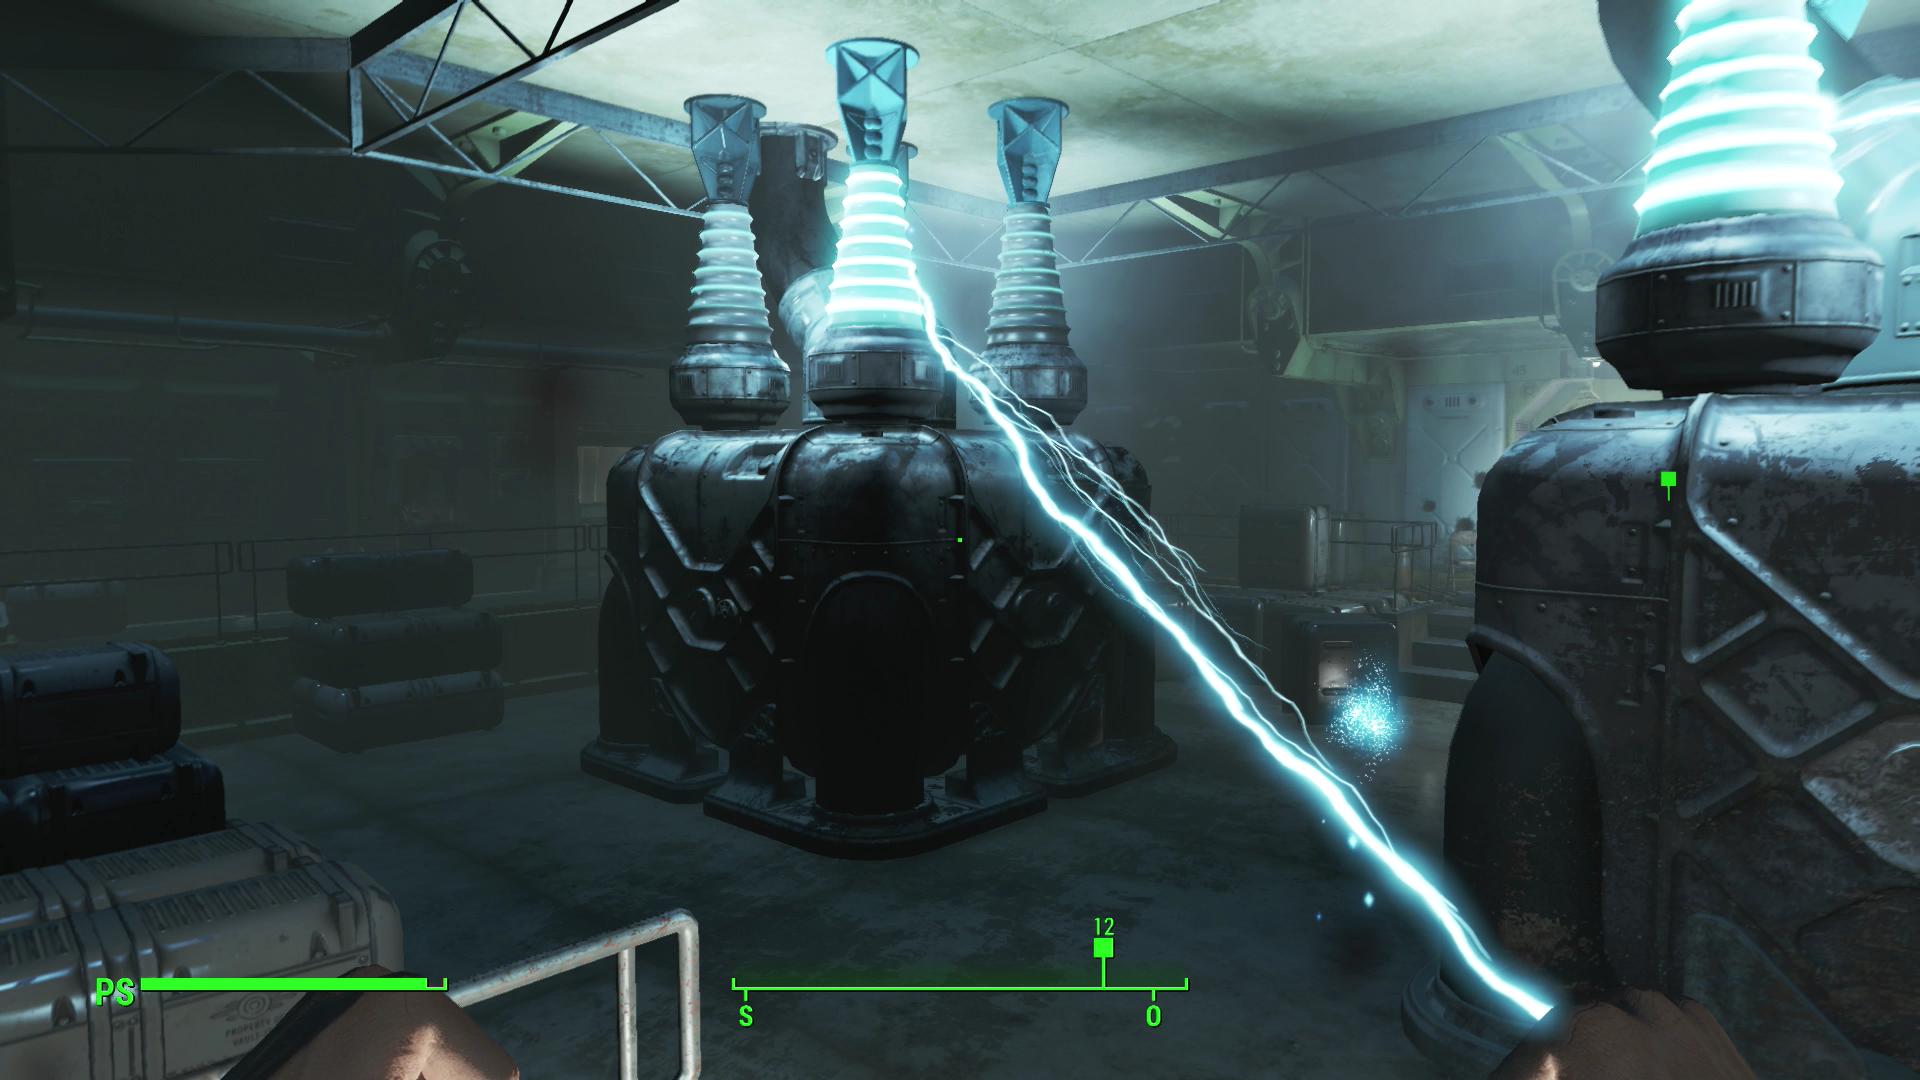 Immagine pubblicata in relazione al seguente contenuto: Guarda gli screenshots leaked di Fallout 4 su PlayStation 4 in Full HD | Nome immagine: news23301_Fallout-4-PS4-Screenshot_6.jpg